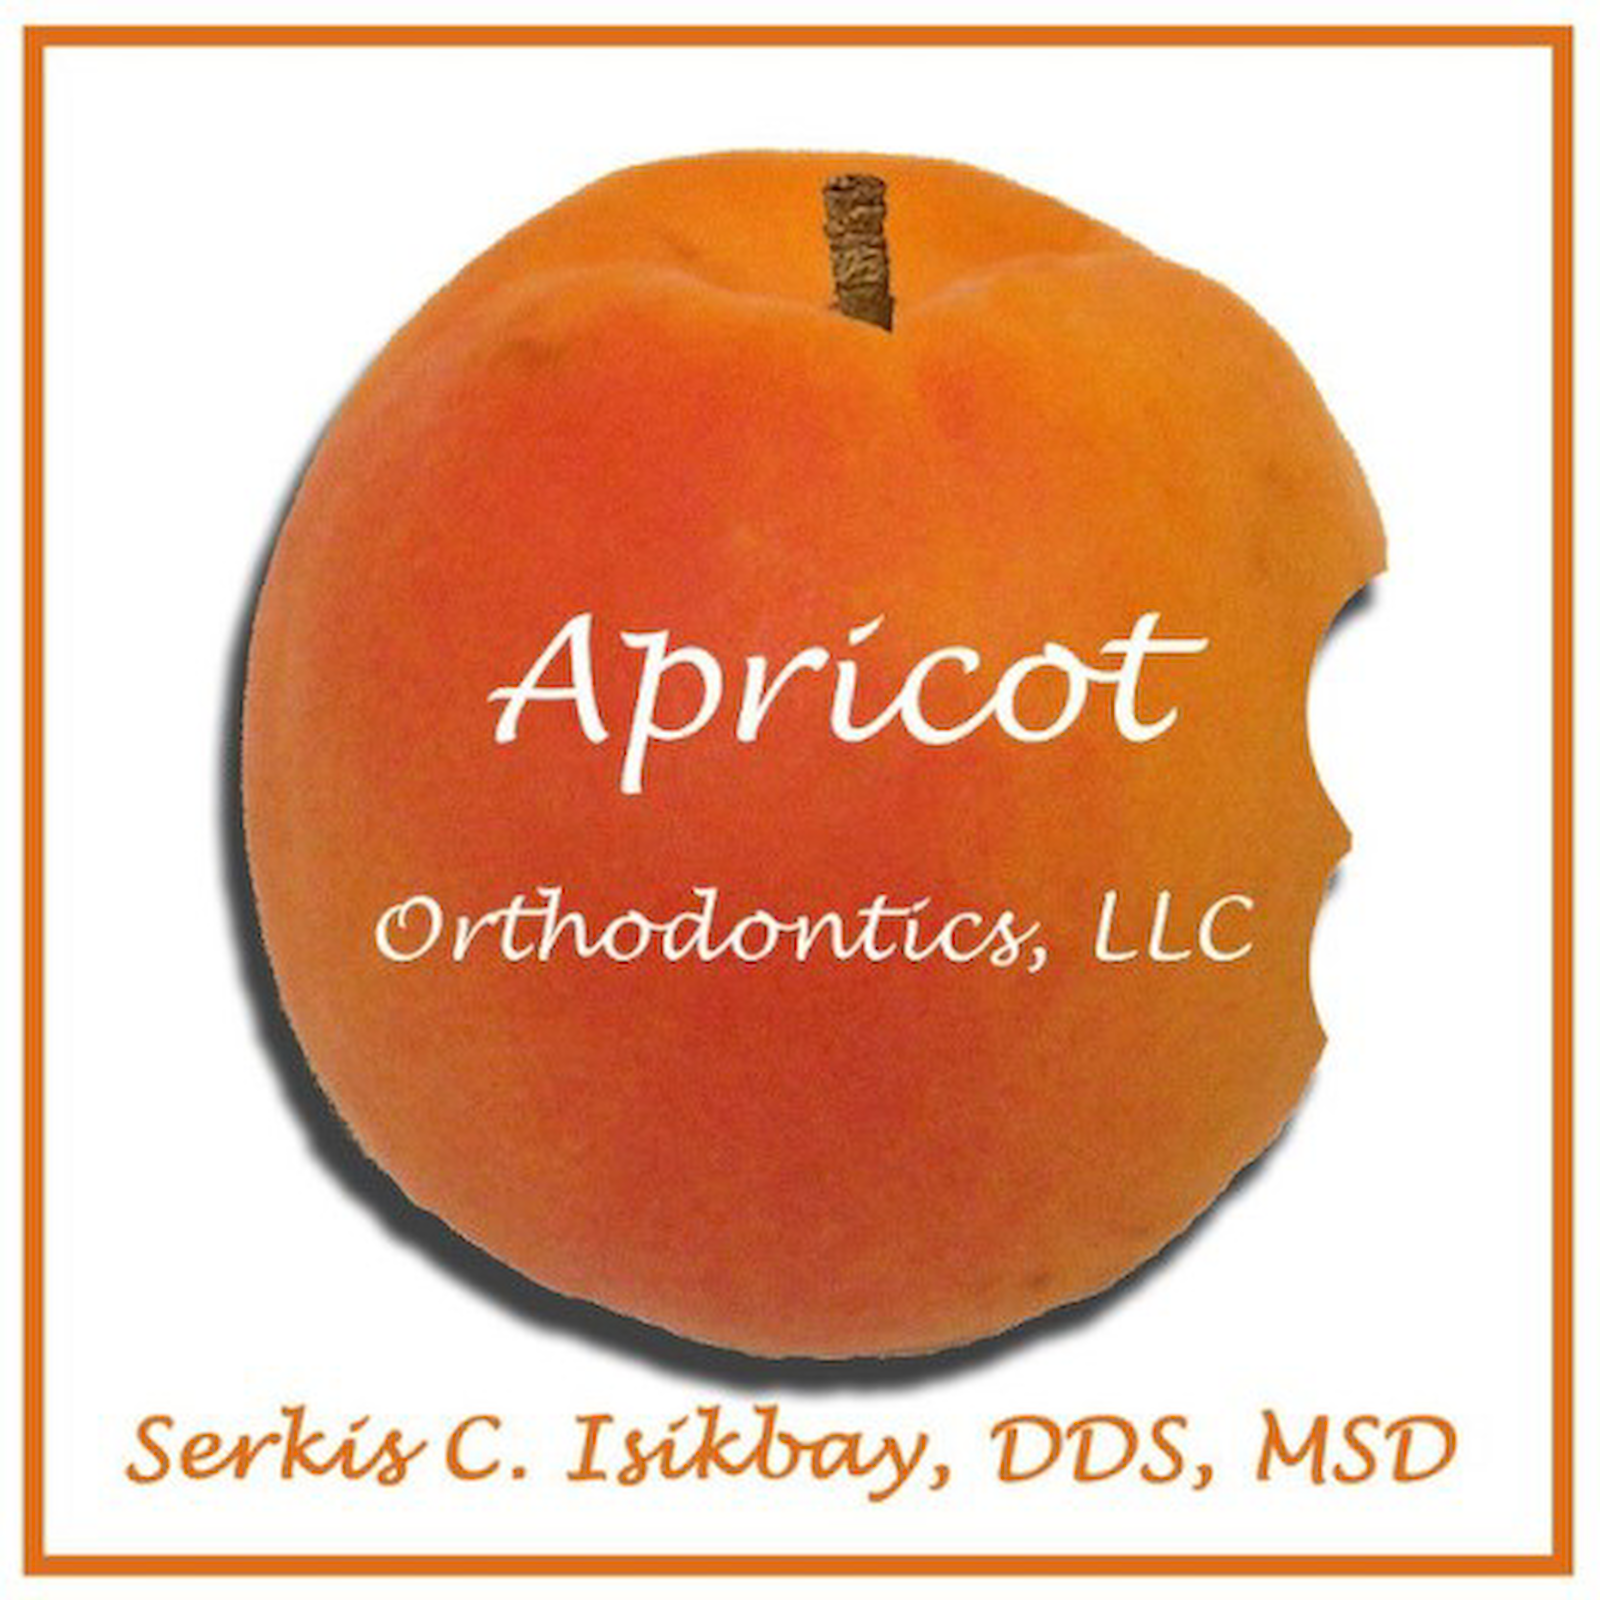 Apricot Orthodontics